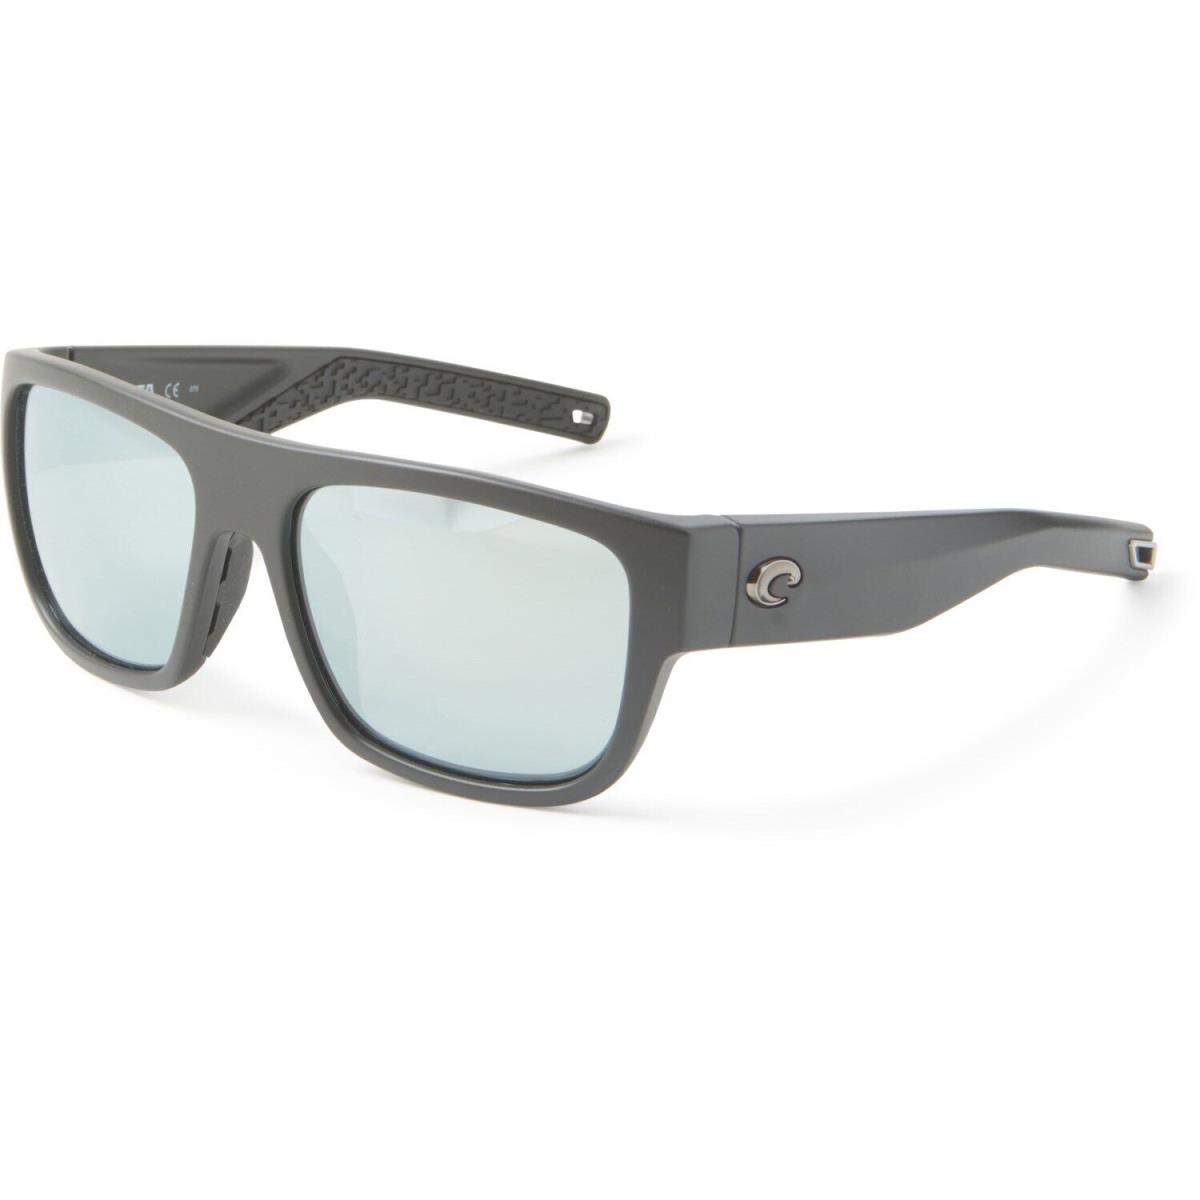 Costa Del Mar Sampan Sunglasses - Polarized MattetBlack/GraySilverMirror